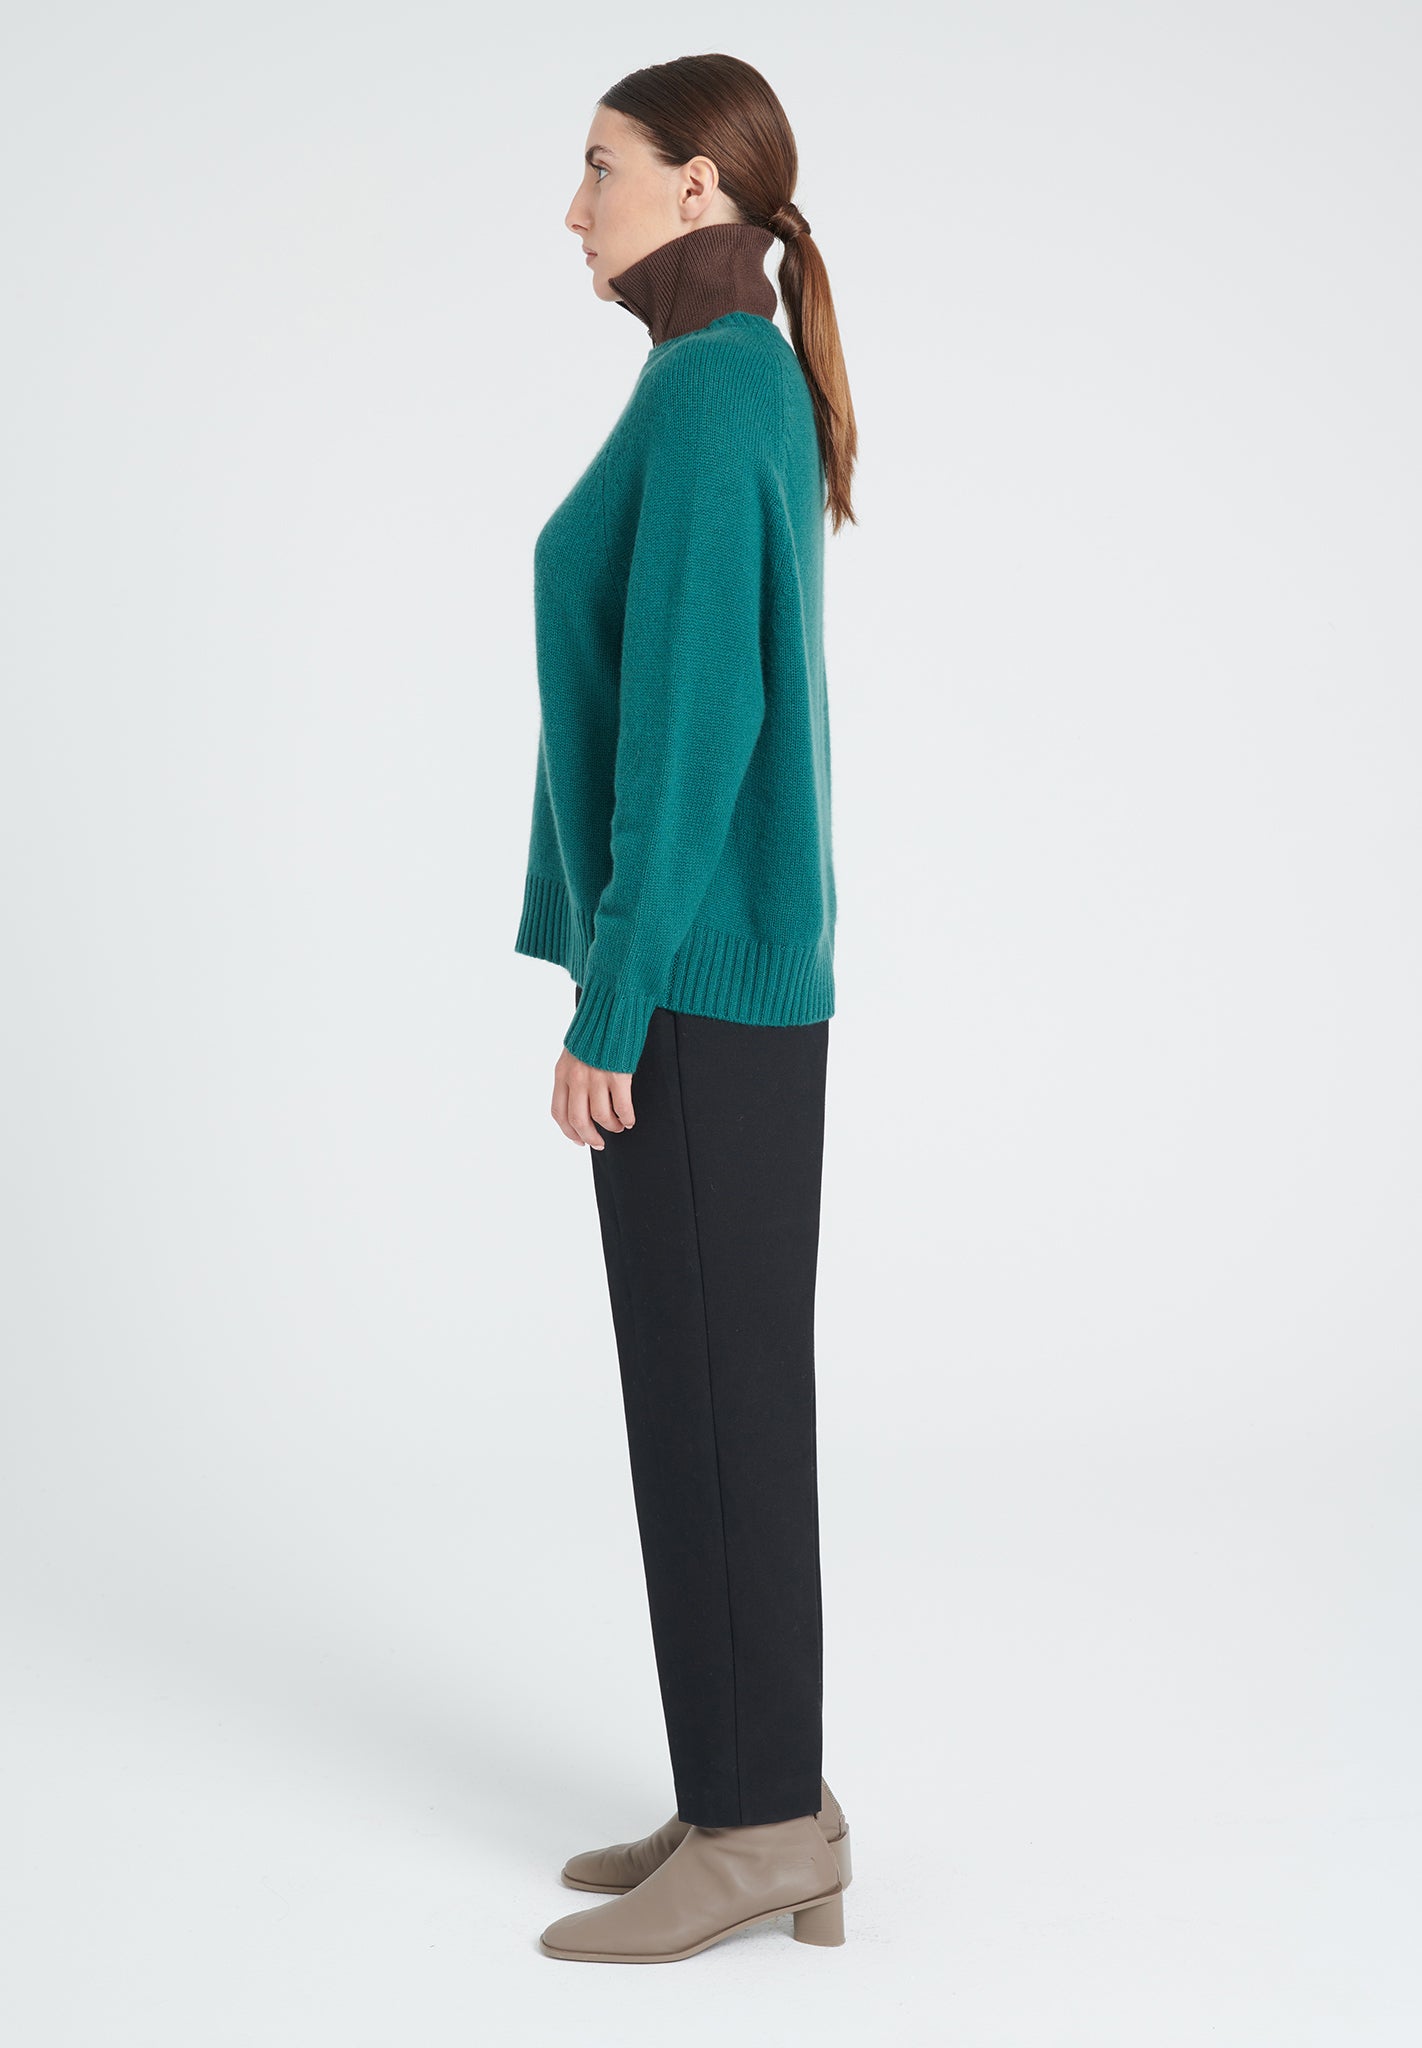 ZAYA 7 Round neck sweater with raglan sleeves in dark green 6-thread cashmere